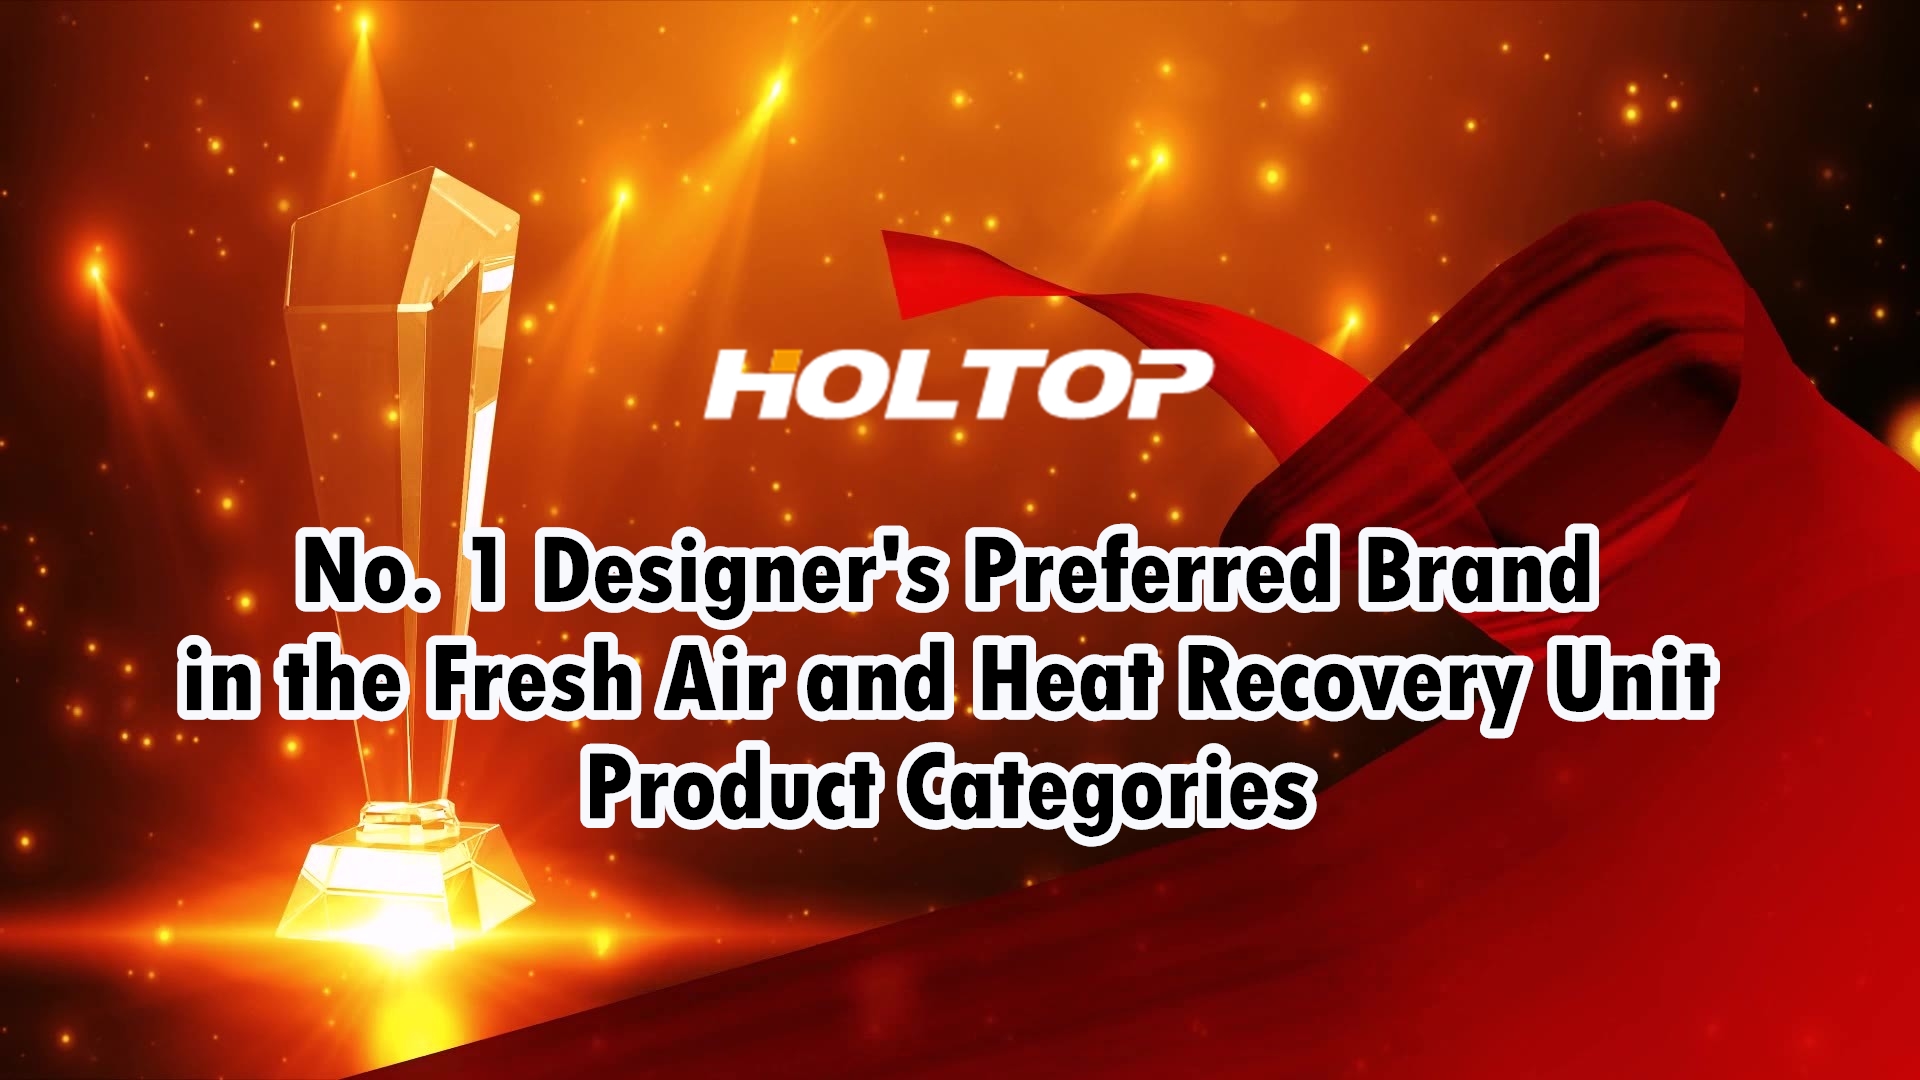 HOLTOP je preferovanou značkou dizajnérov č. 1 v kategóriách produktov jednotiek čerstvého vzduchu a rekuperácie tepla na čínskom trhu